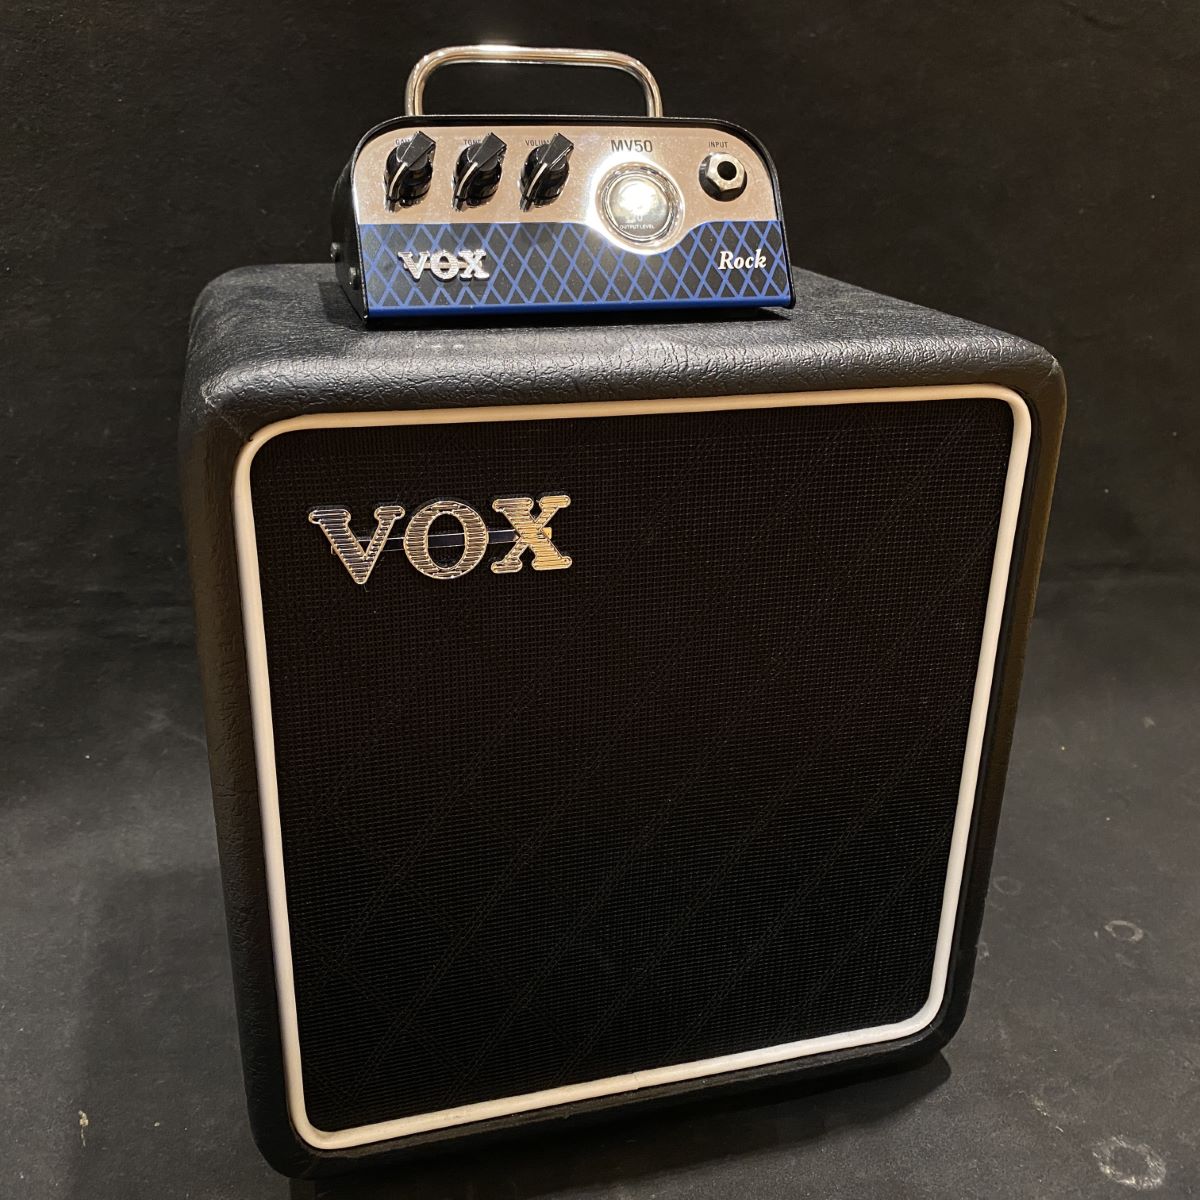 VOX MV50-CR Rock